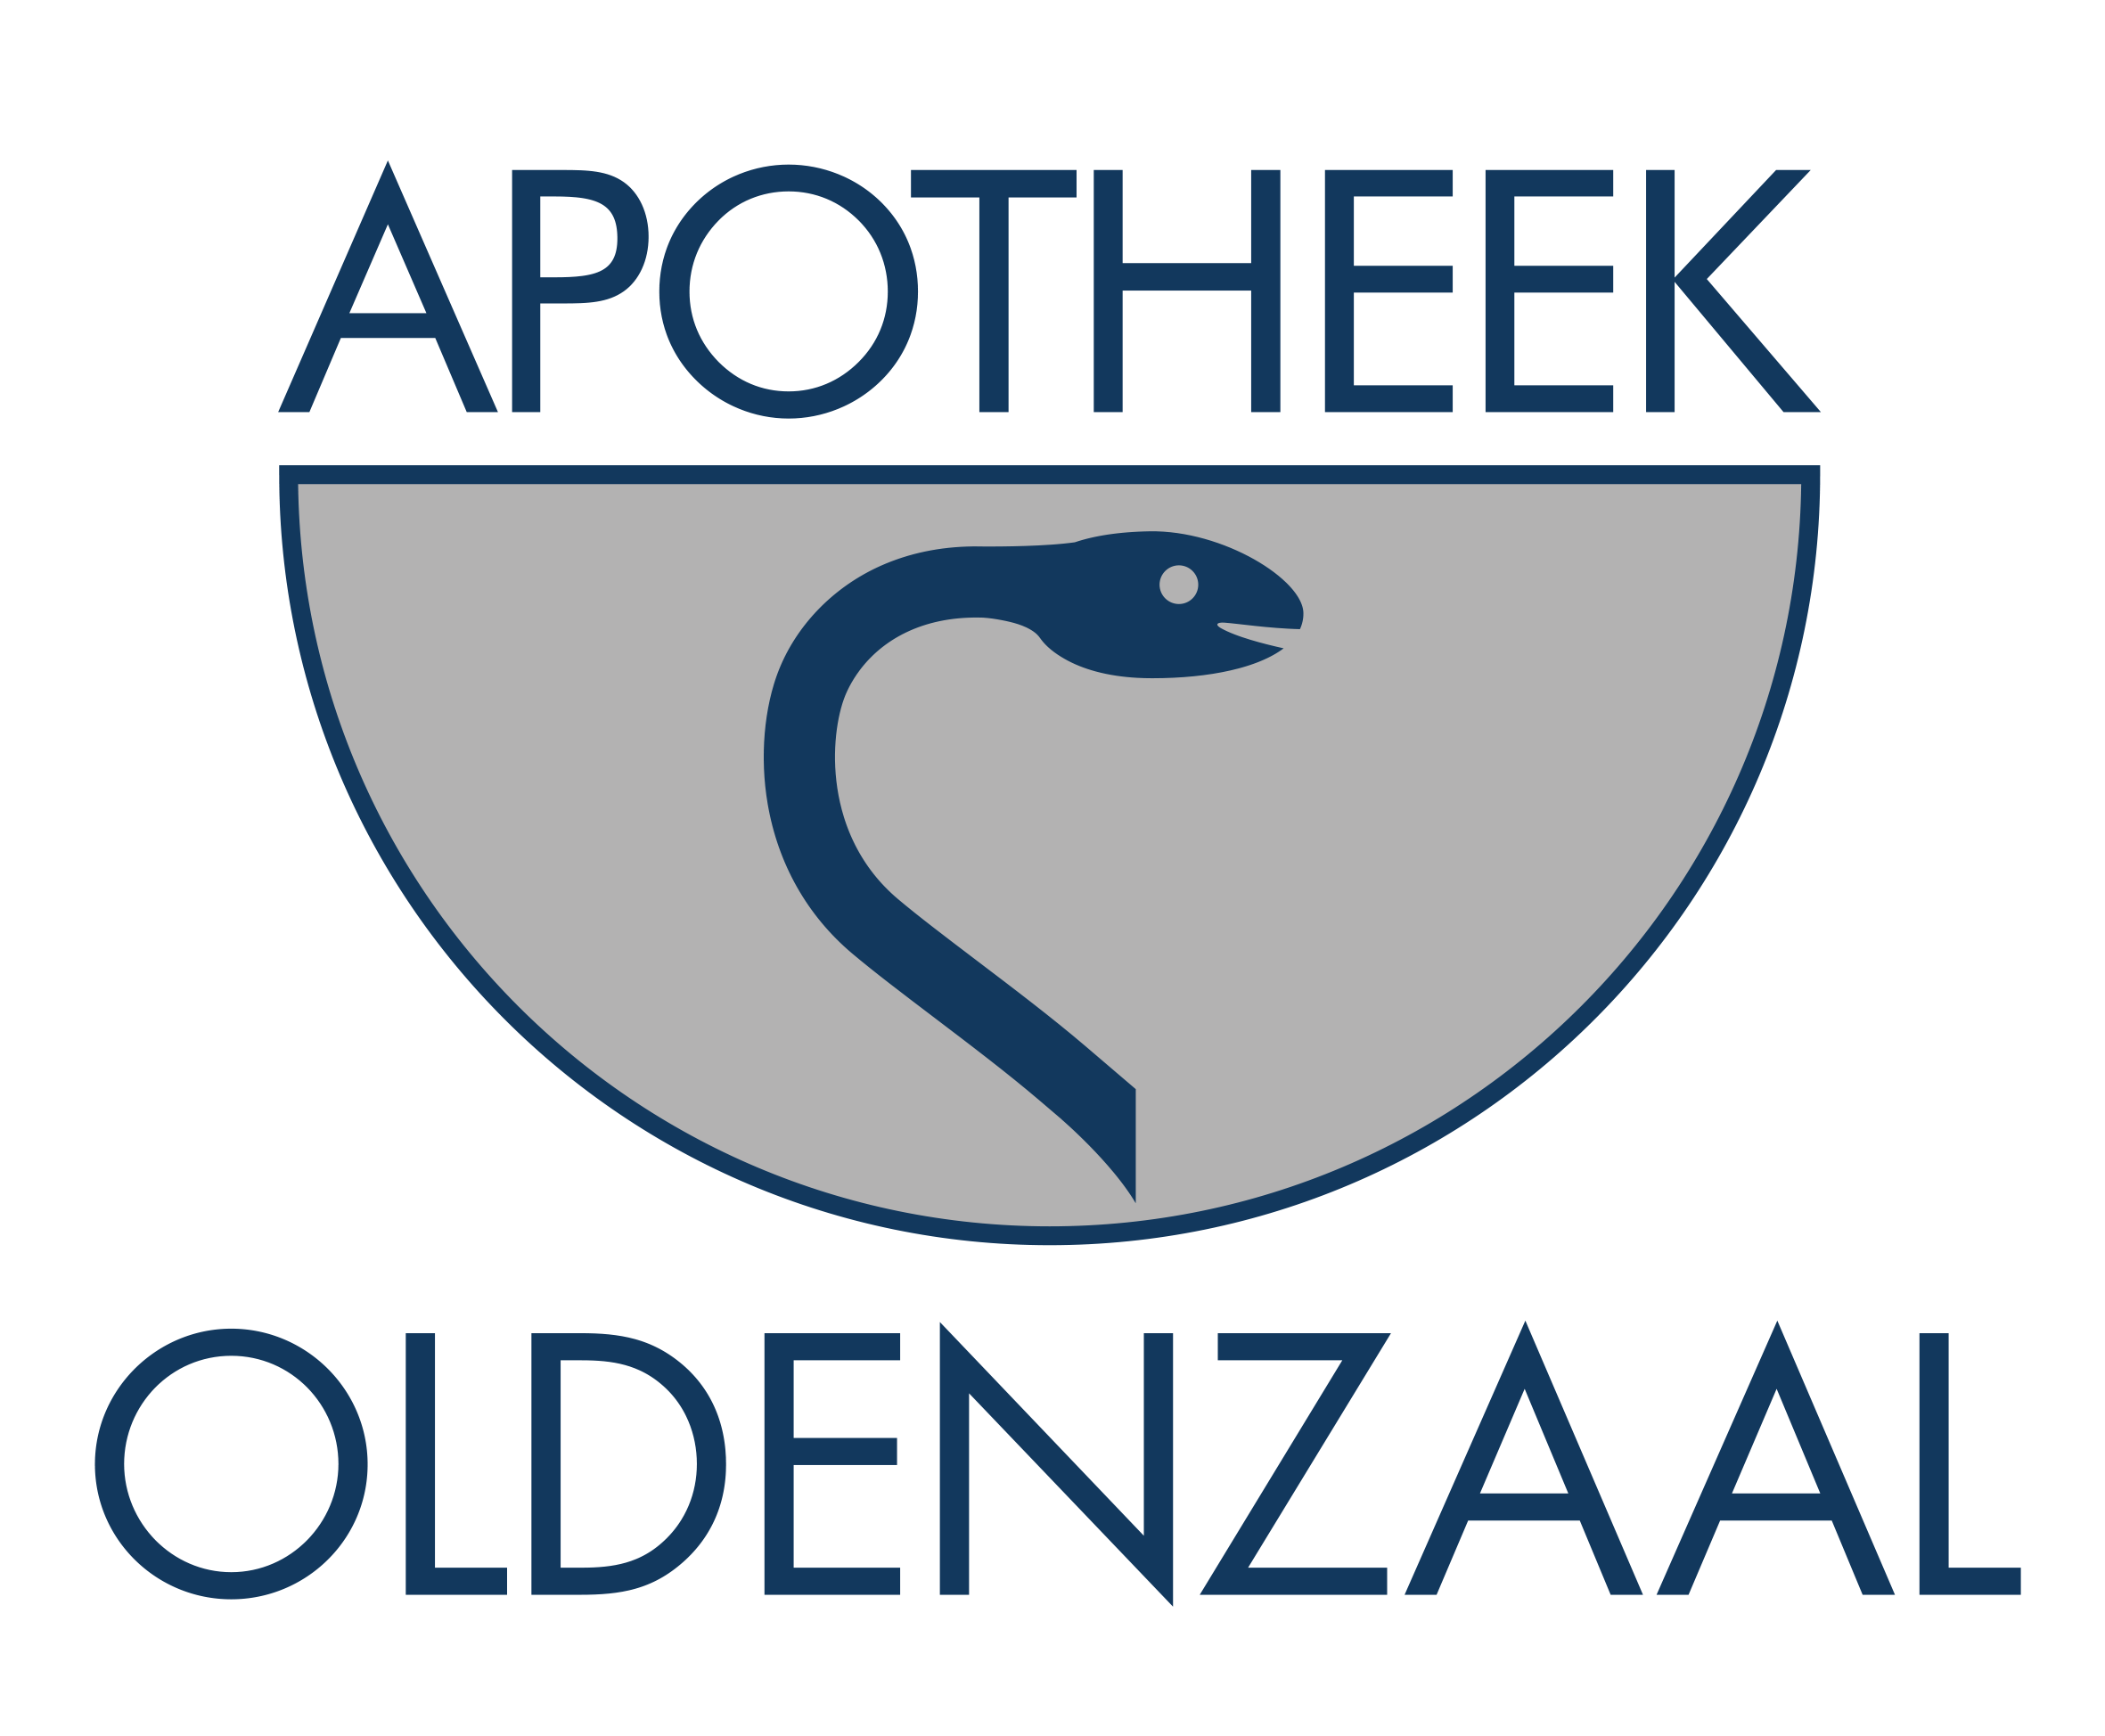 Apotheek Oldenzaal Logo